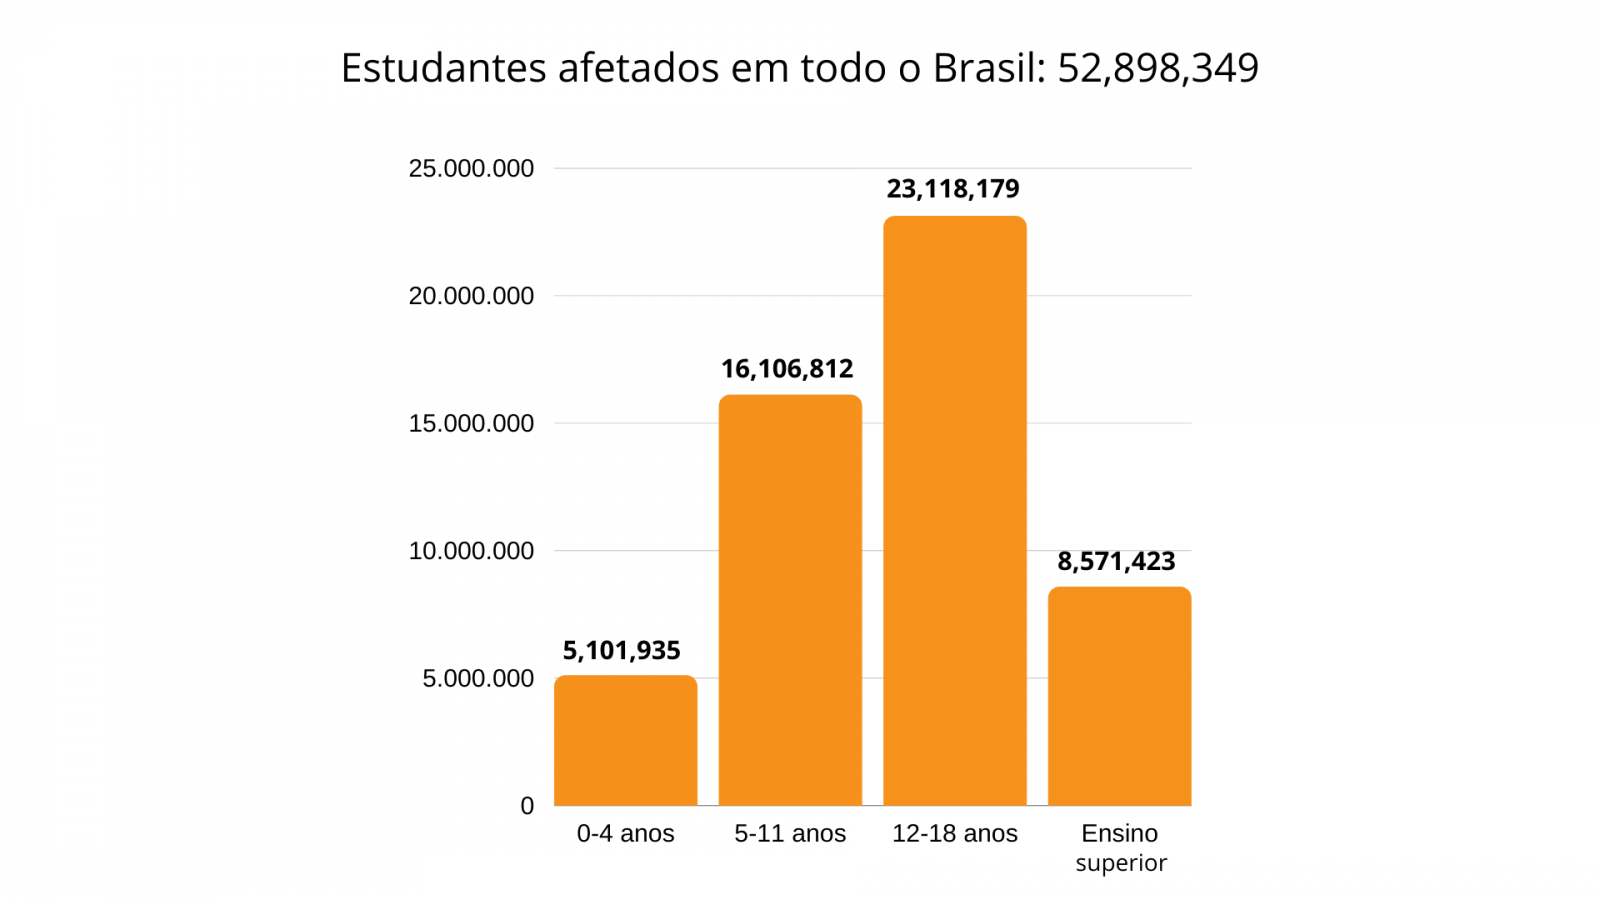 Estudantes afetados pela pandemia no Brasil